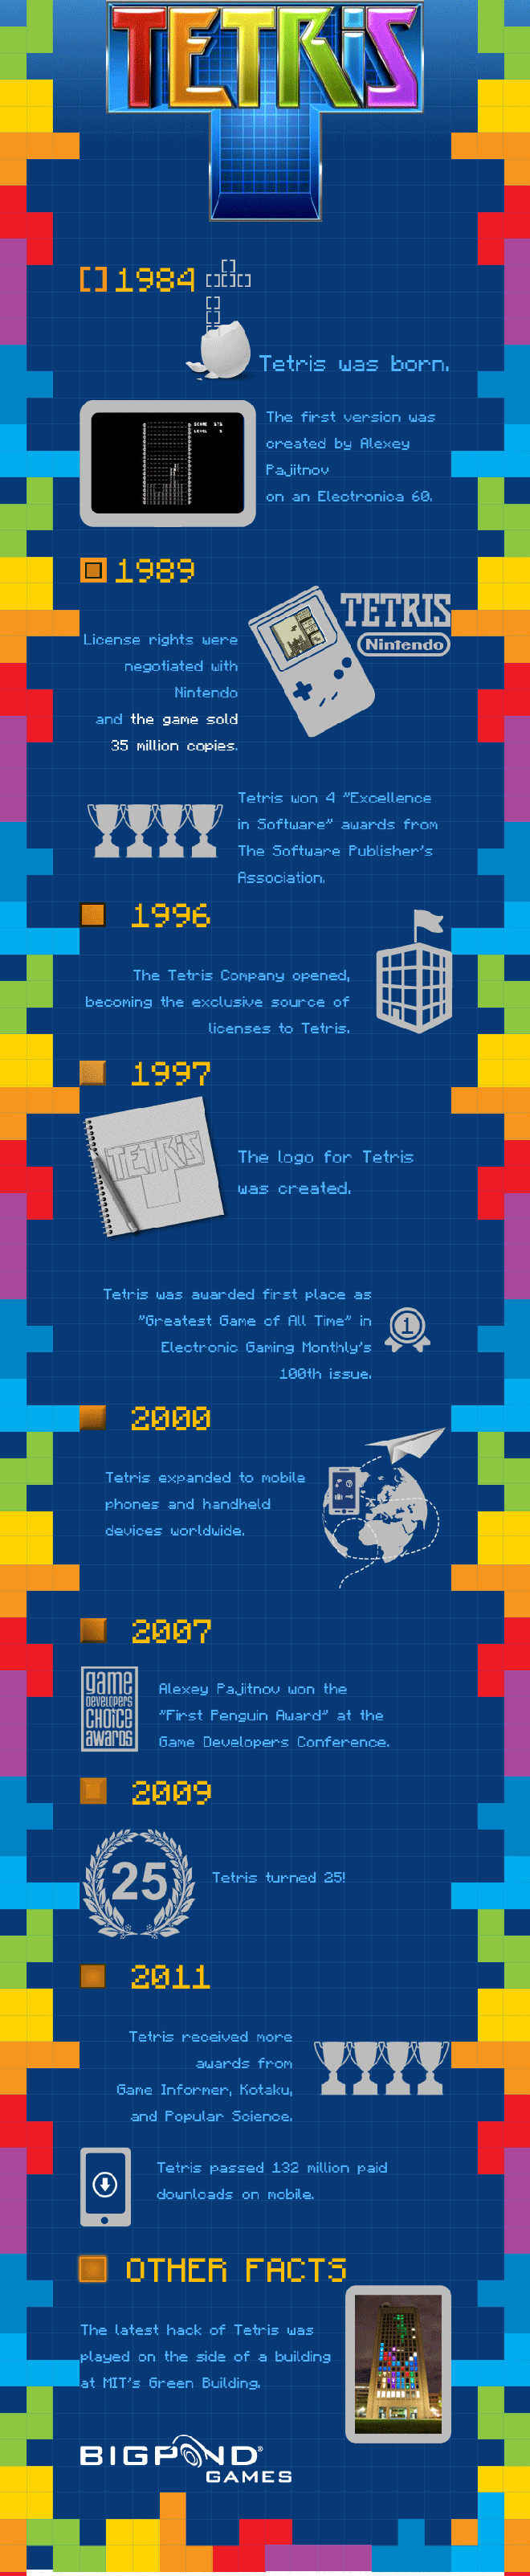 The History of Tetris